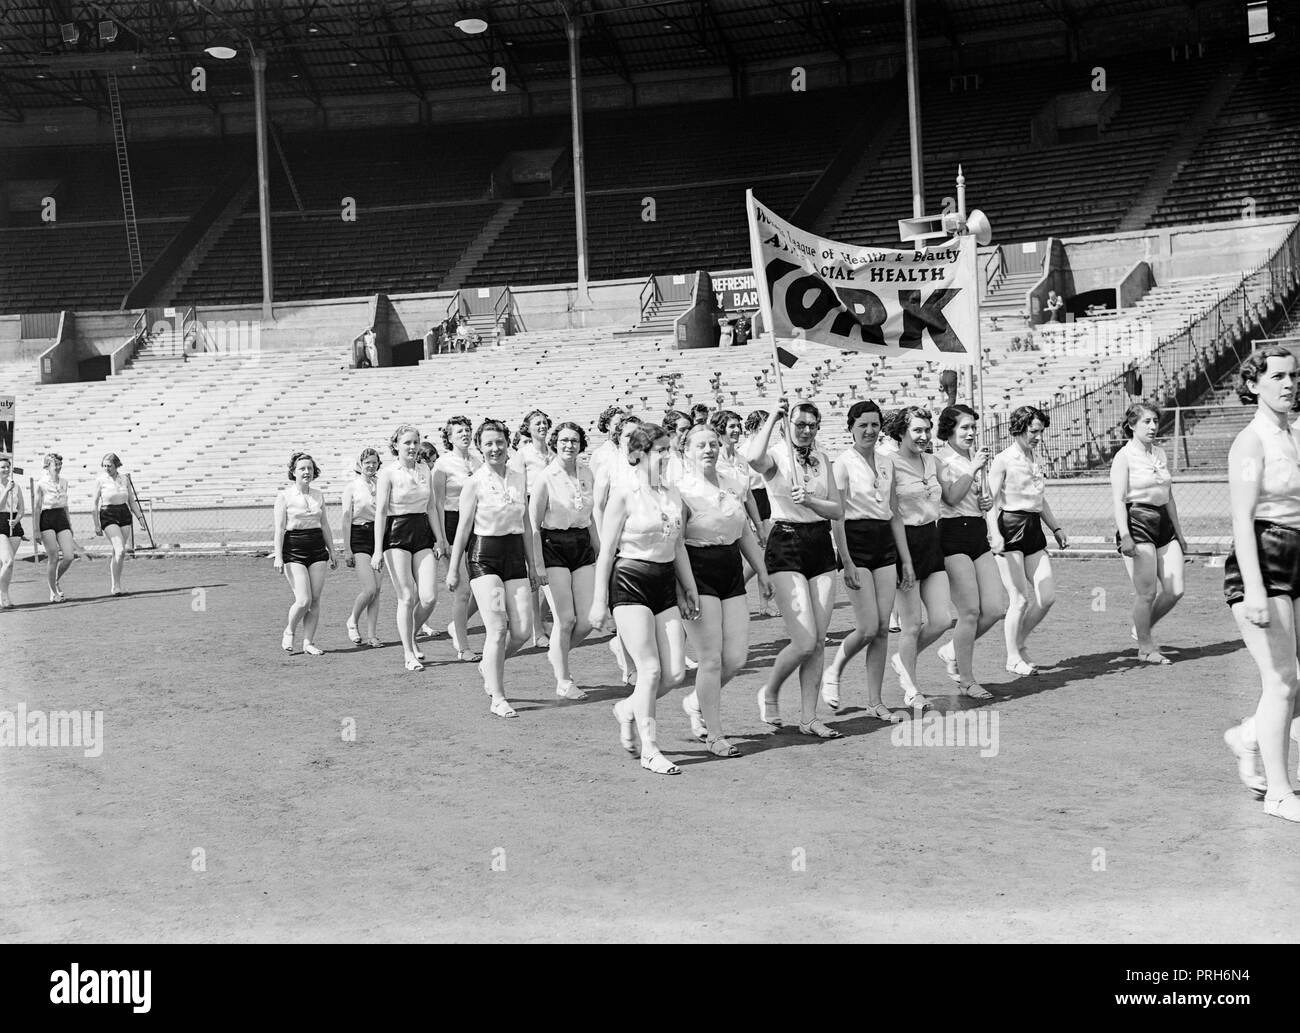 Die Mitglieder der Liga der Frauen, der Gesundheit und der Schönheit, in einem großen Stadion in England marschieren in den 1930er Jahren. Banner aus der Niederlassung in New York zu sehen ist. Sie sind Kampagnen über rassische Gesundheit Stockfoto